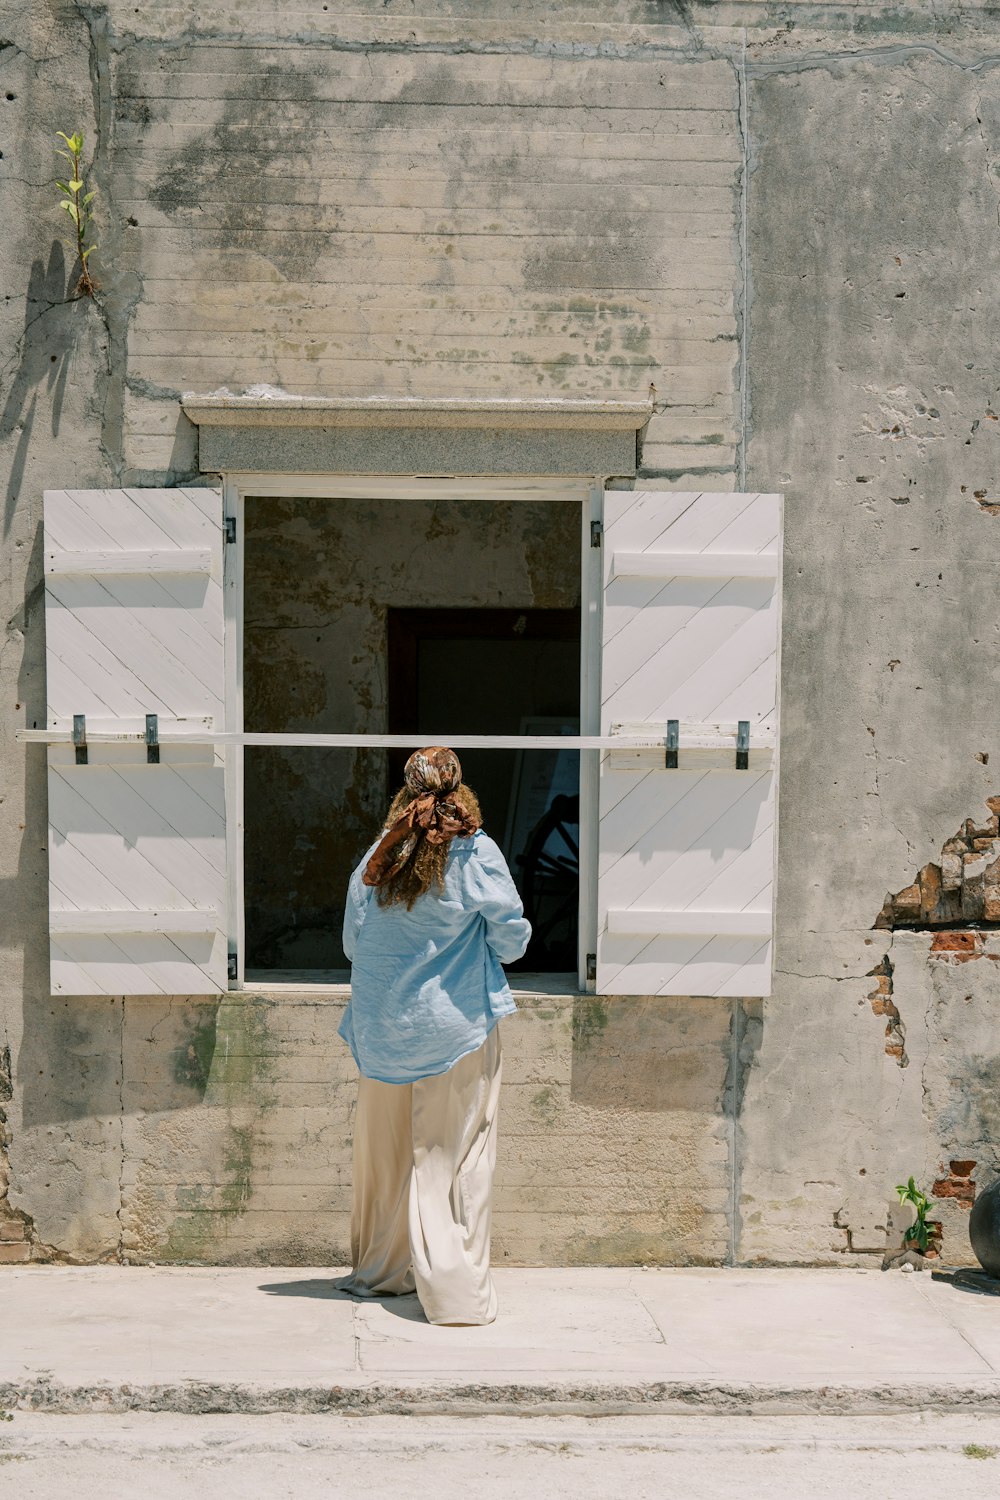 una donna in piedi davanti a una finestra con le persiane aperte